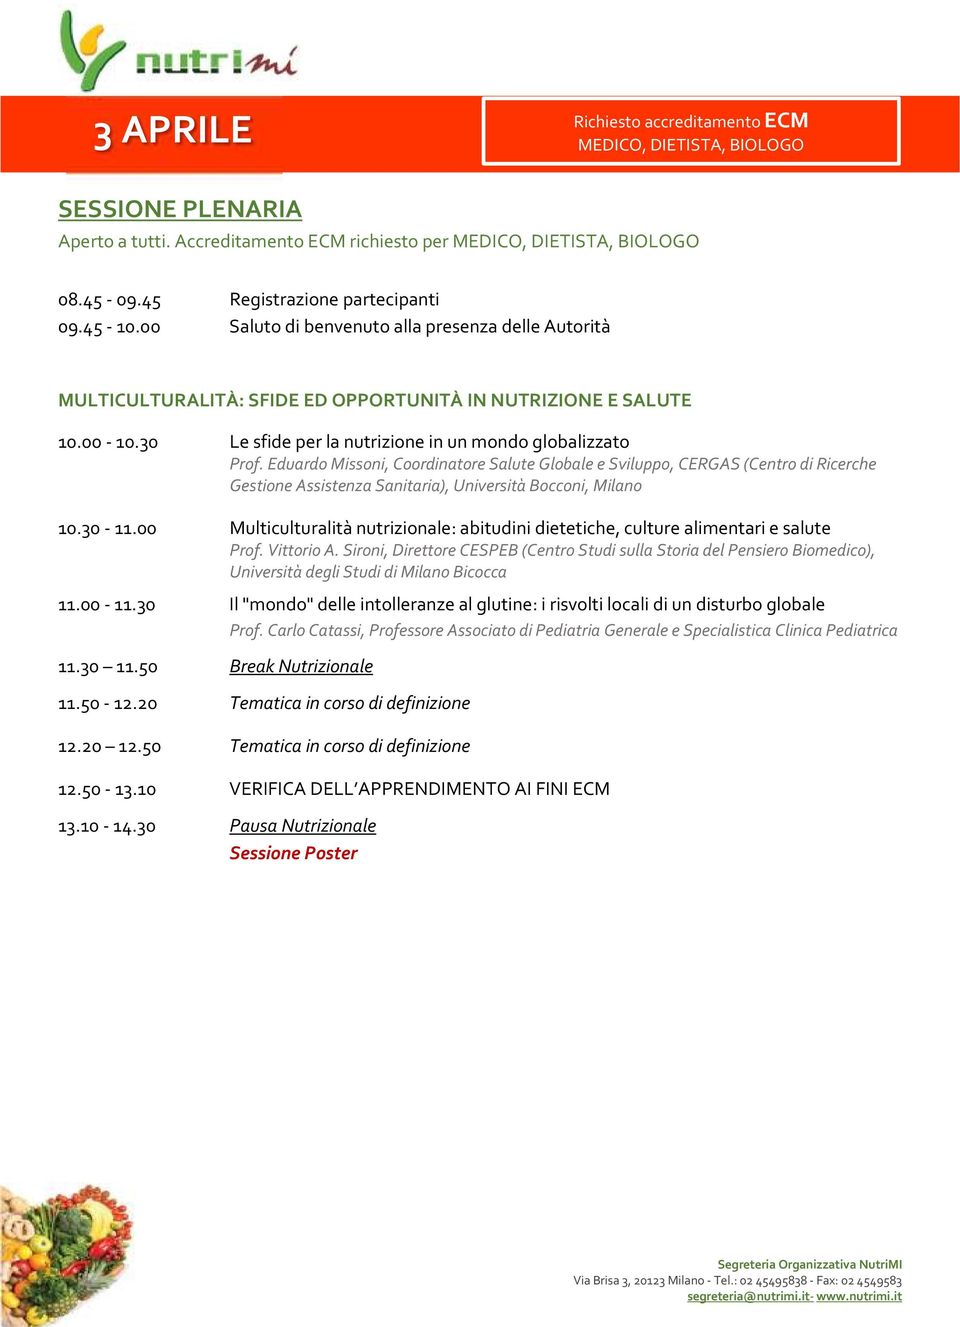 Eduardo Missoni, Coordinatore Salute Globale e Sviluppo, CERGAS (Centro di Ricerche Gestione Assistenza Sanitaria), Università Bocconi, Milano 10.30-11.